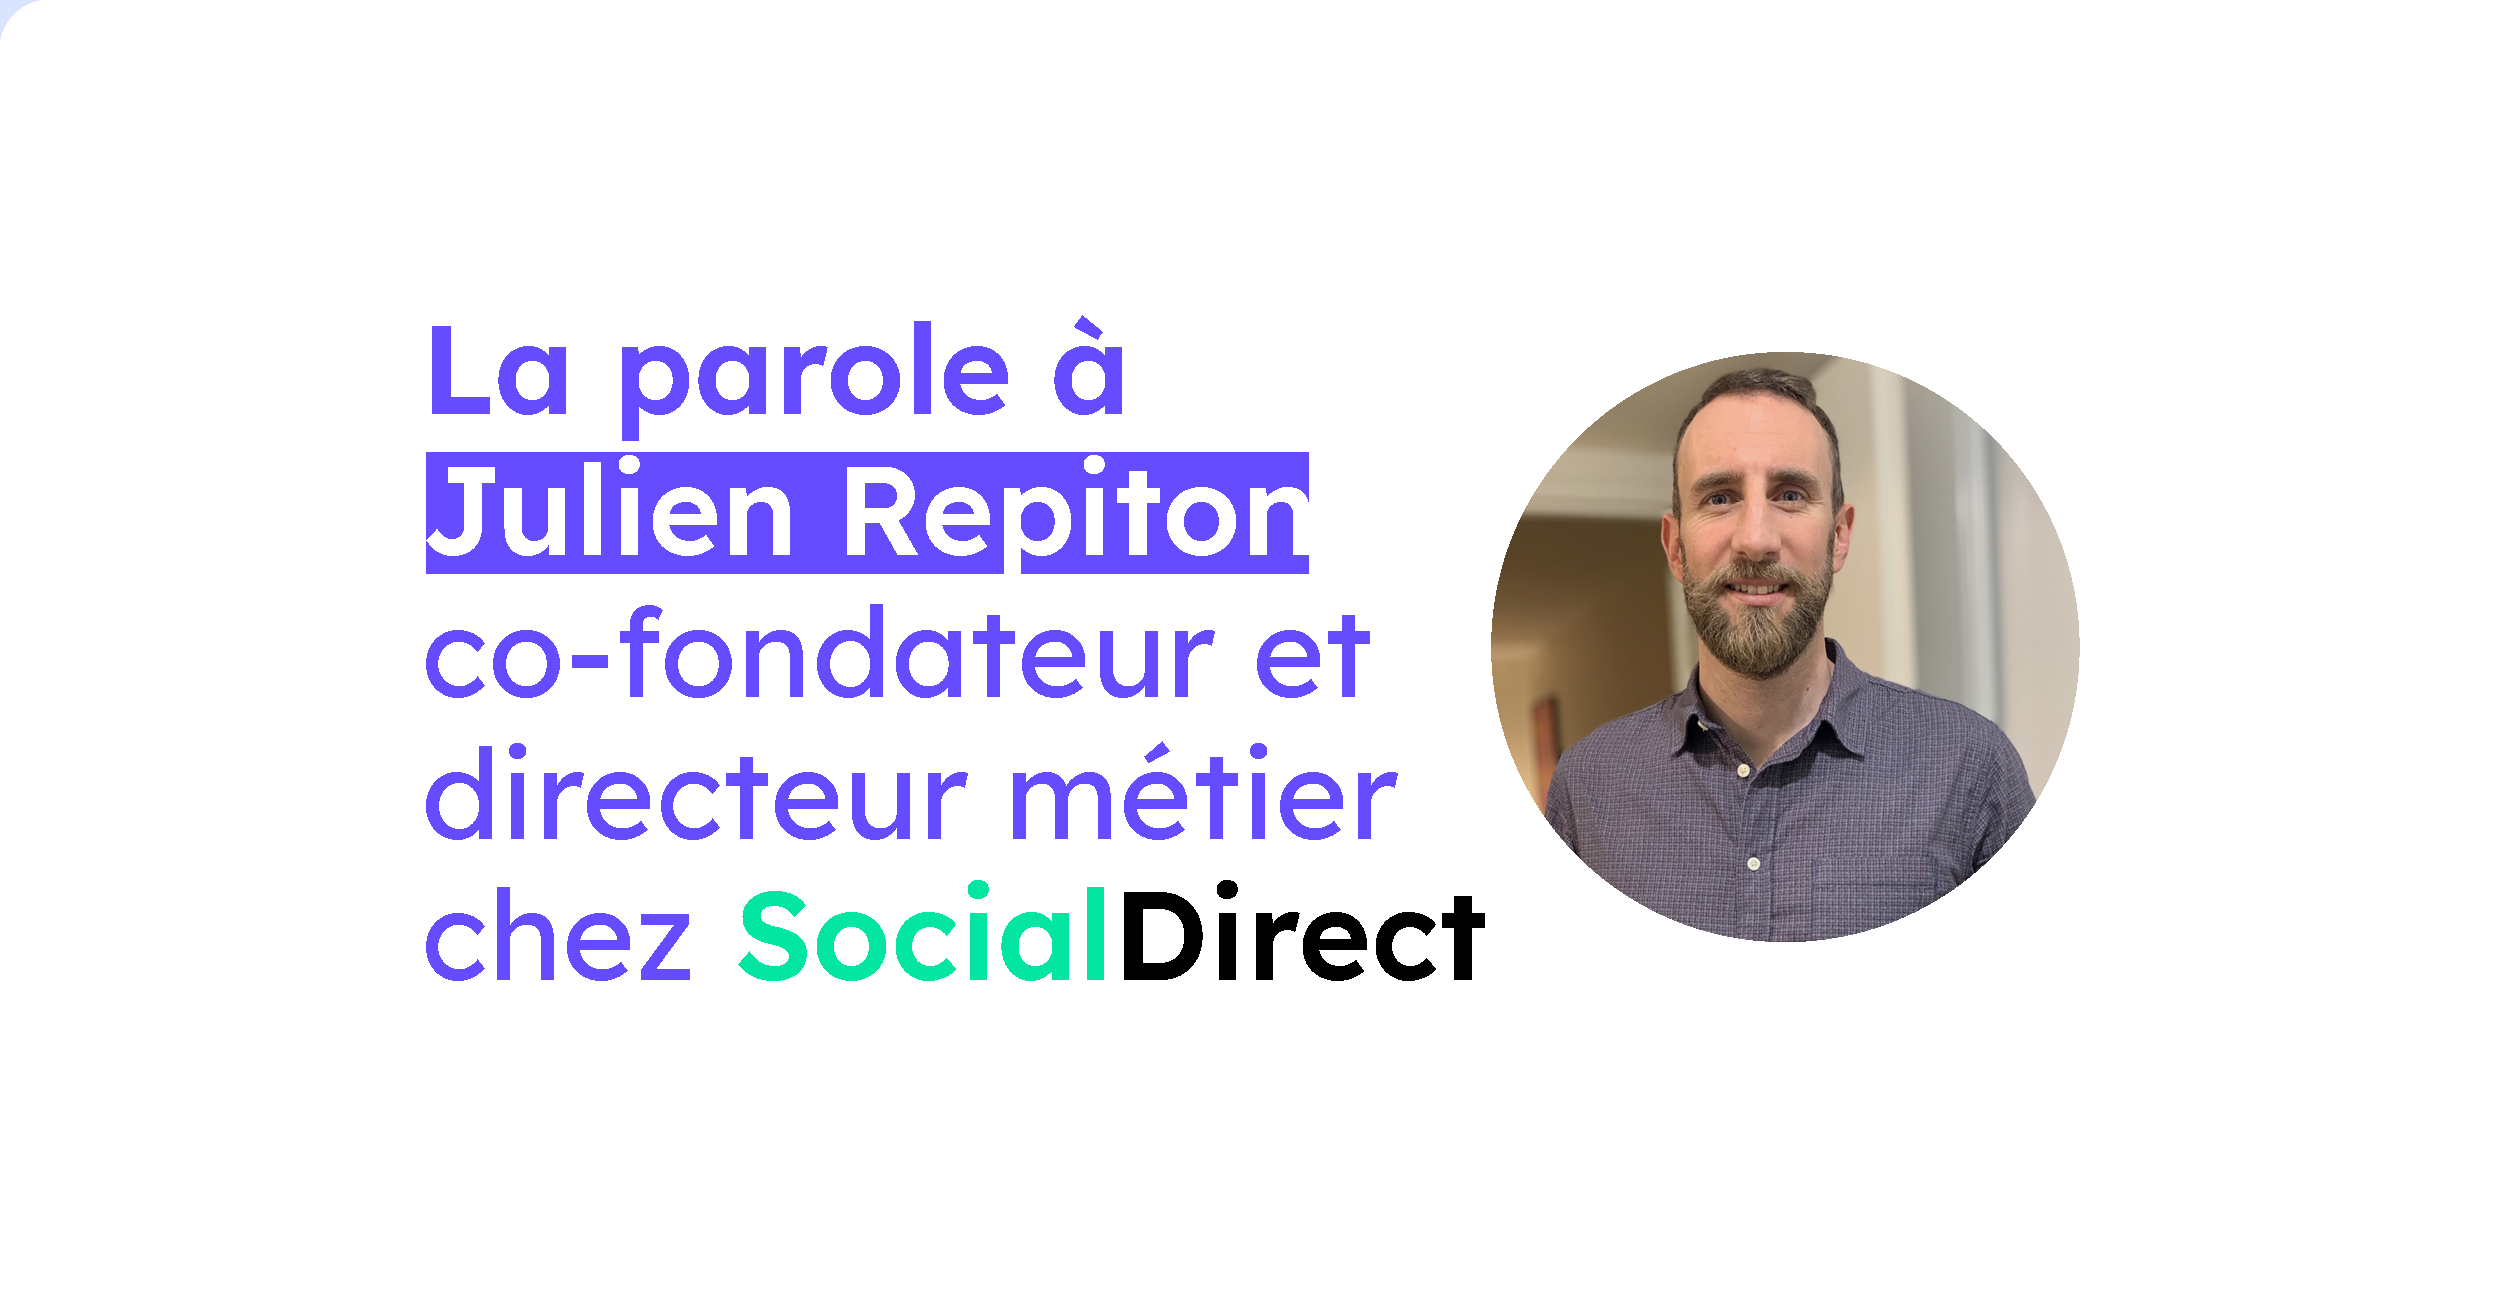 La parole à Julien Repiton, co-fondateur de SocialDirect